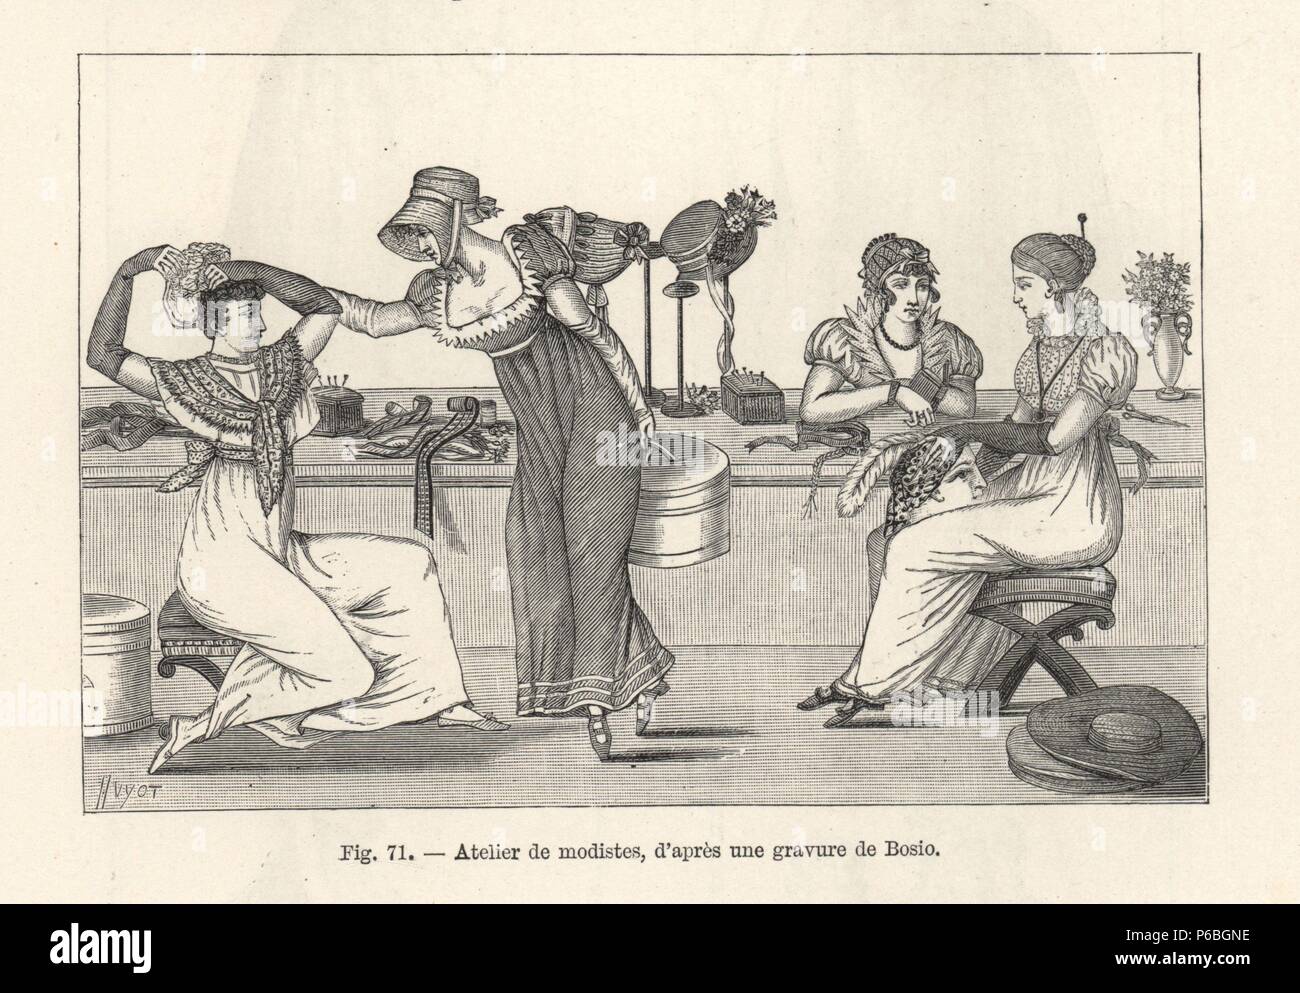 Milliners' officina, con hatmakers e i clienti cercando sui cappelli, 1800.  Moda donna in abiti eleganti e fichu (neckerchief) guardando cofani.  Illustrazione disegnata da Jean-Francois Bosio, xilografia da Huyot da Paul  Lacroix's '